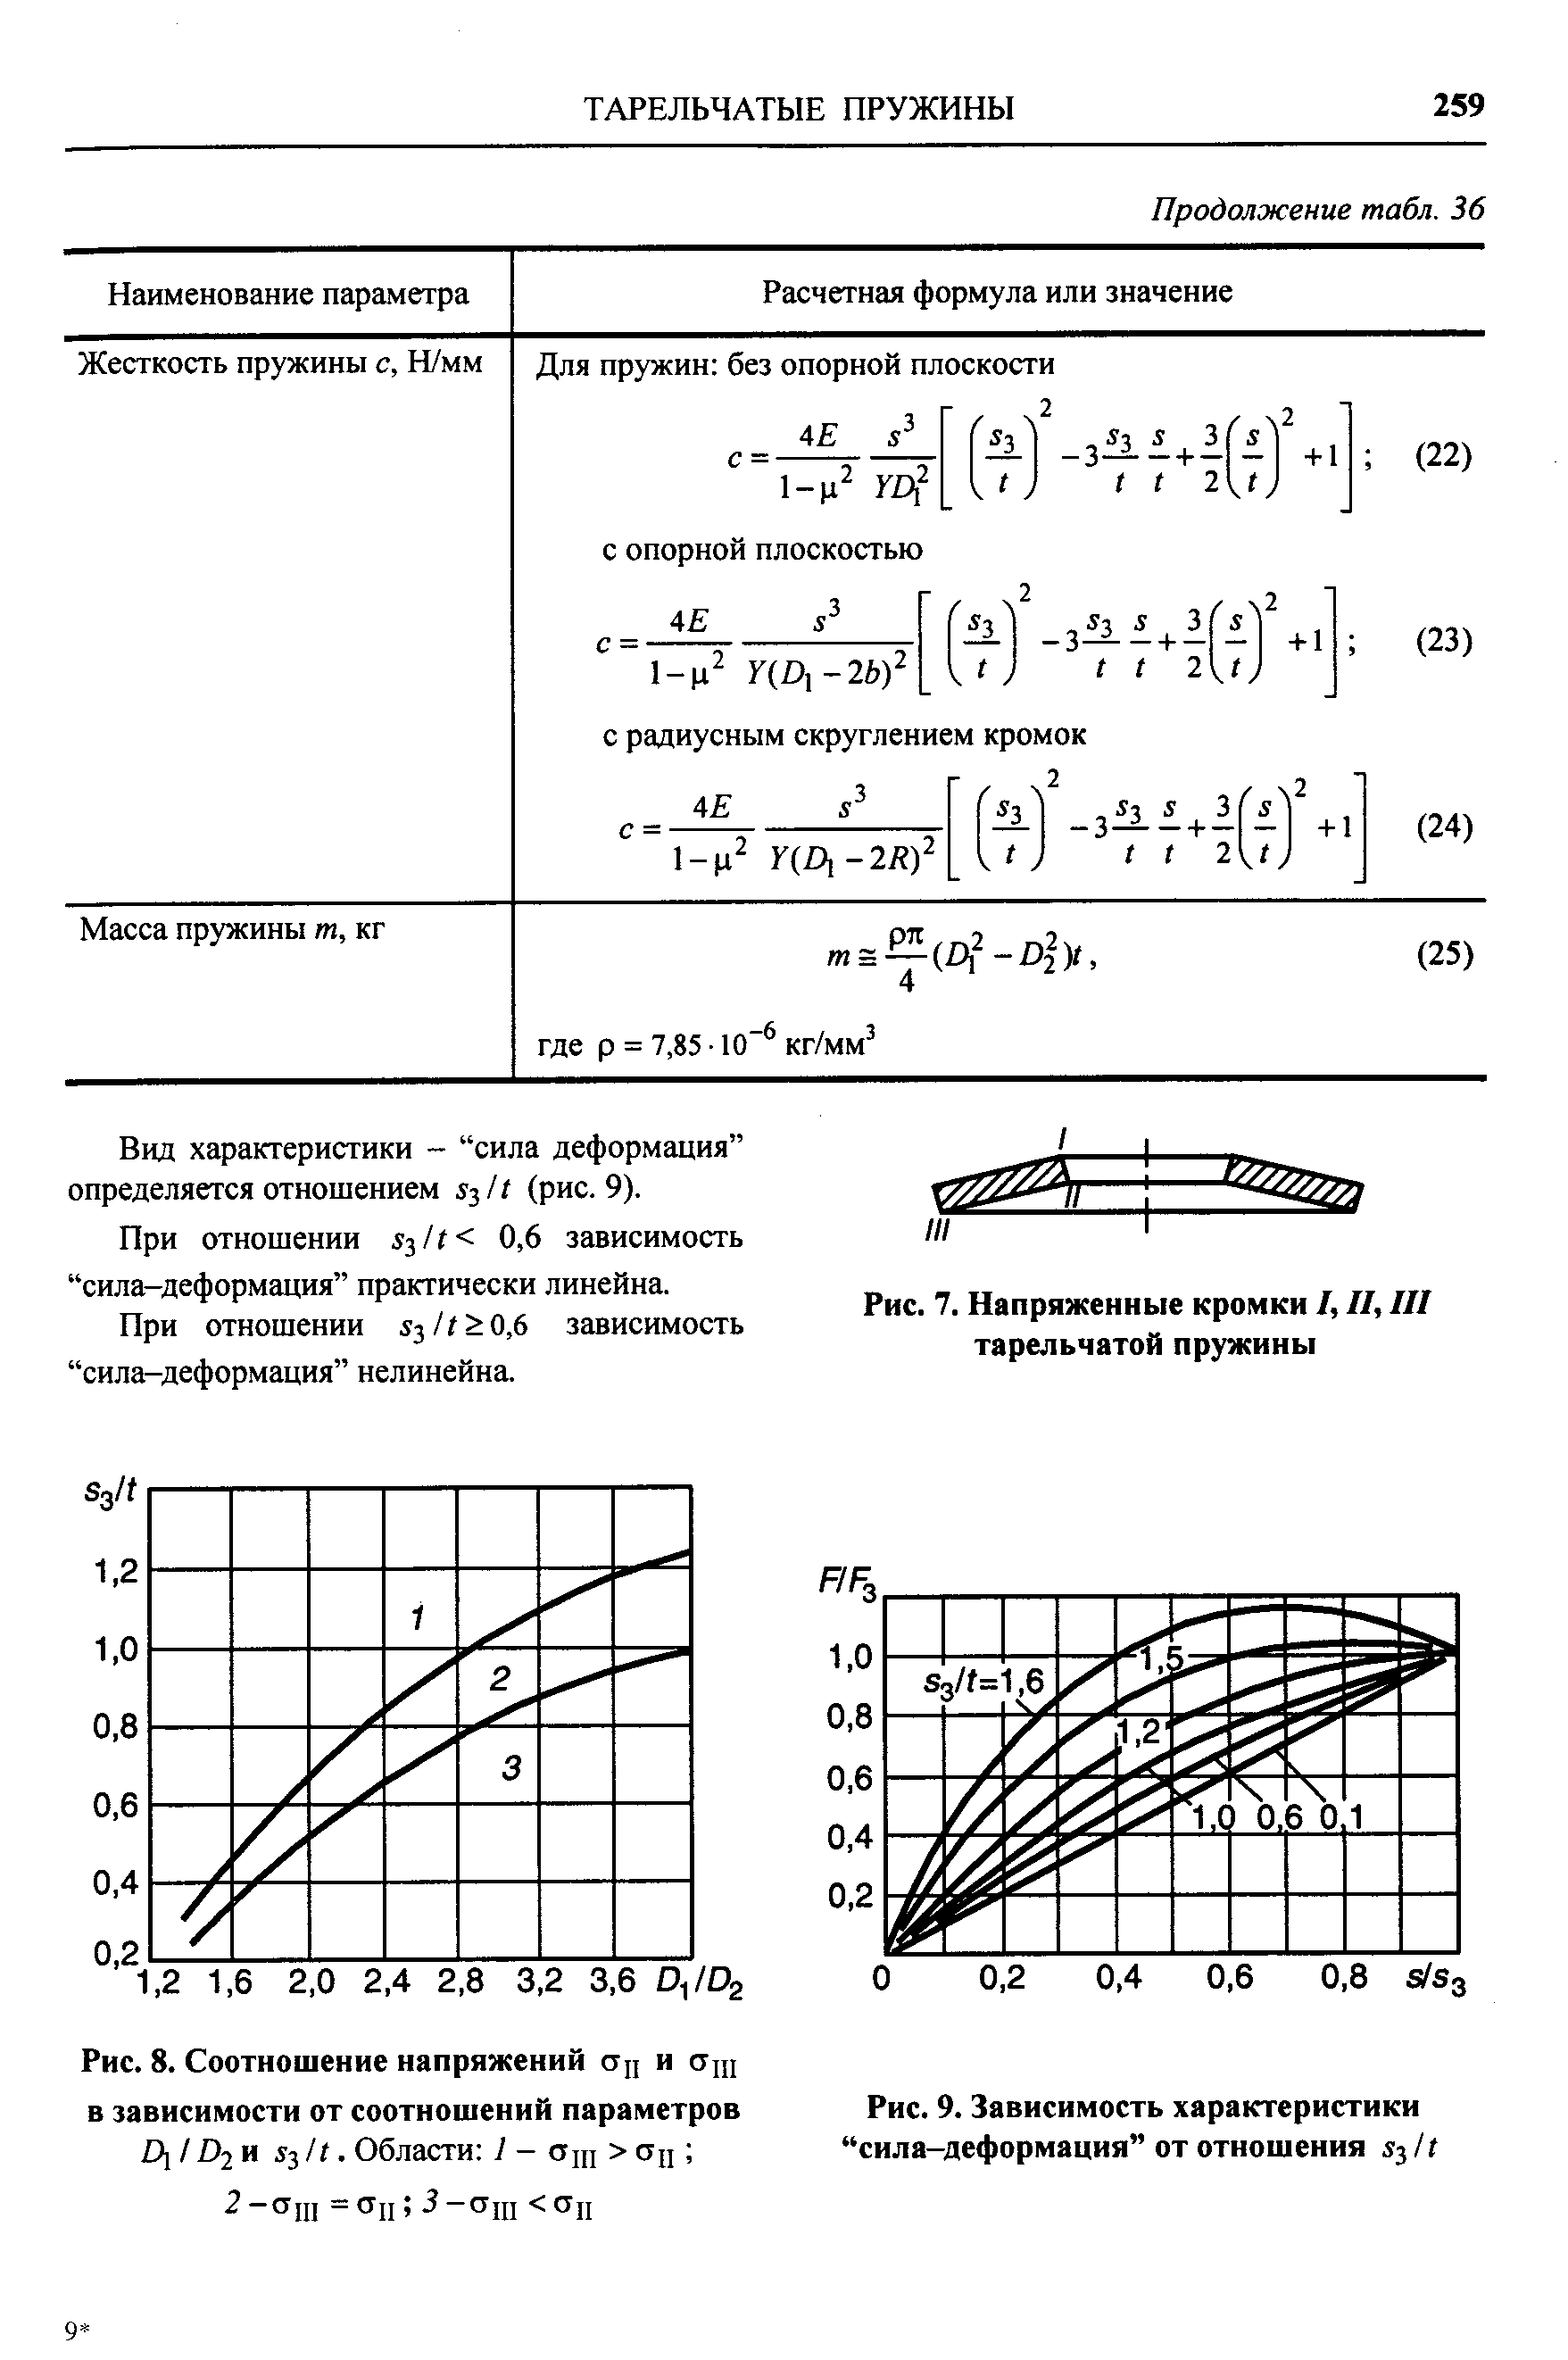 Вид характеристики - сила деформация определяется отношением - /1 (рис. 9).
